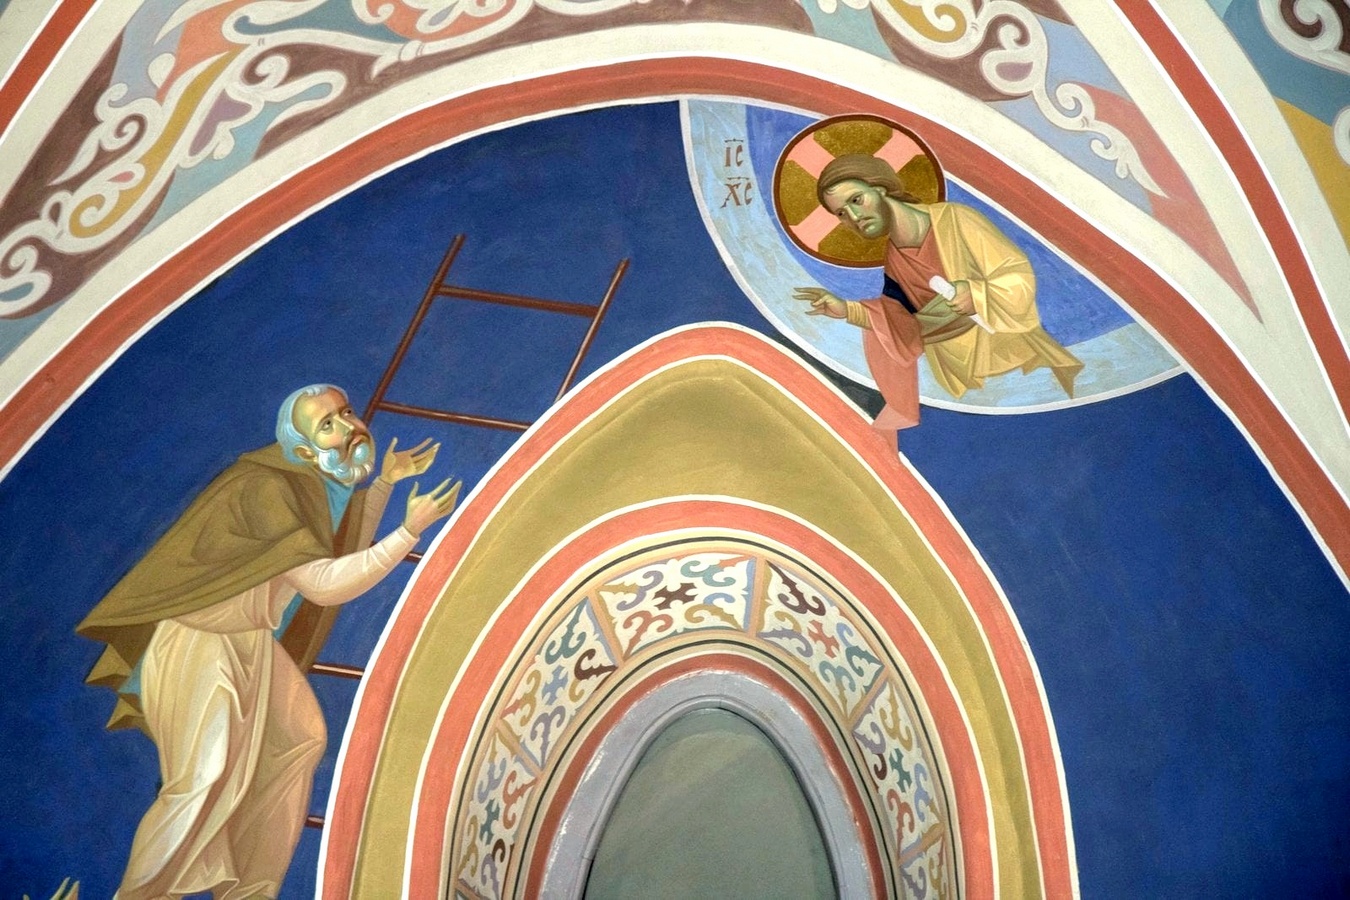 Лествица канал спас. Изображения грибов на церковных фресках.